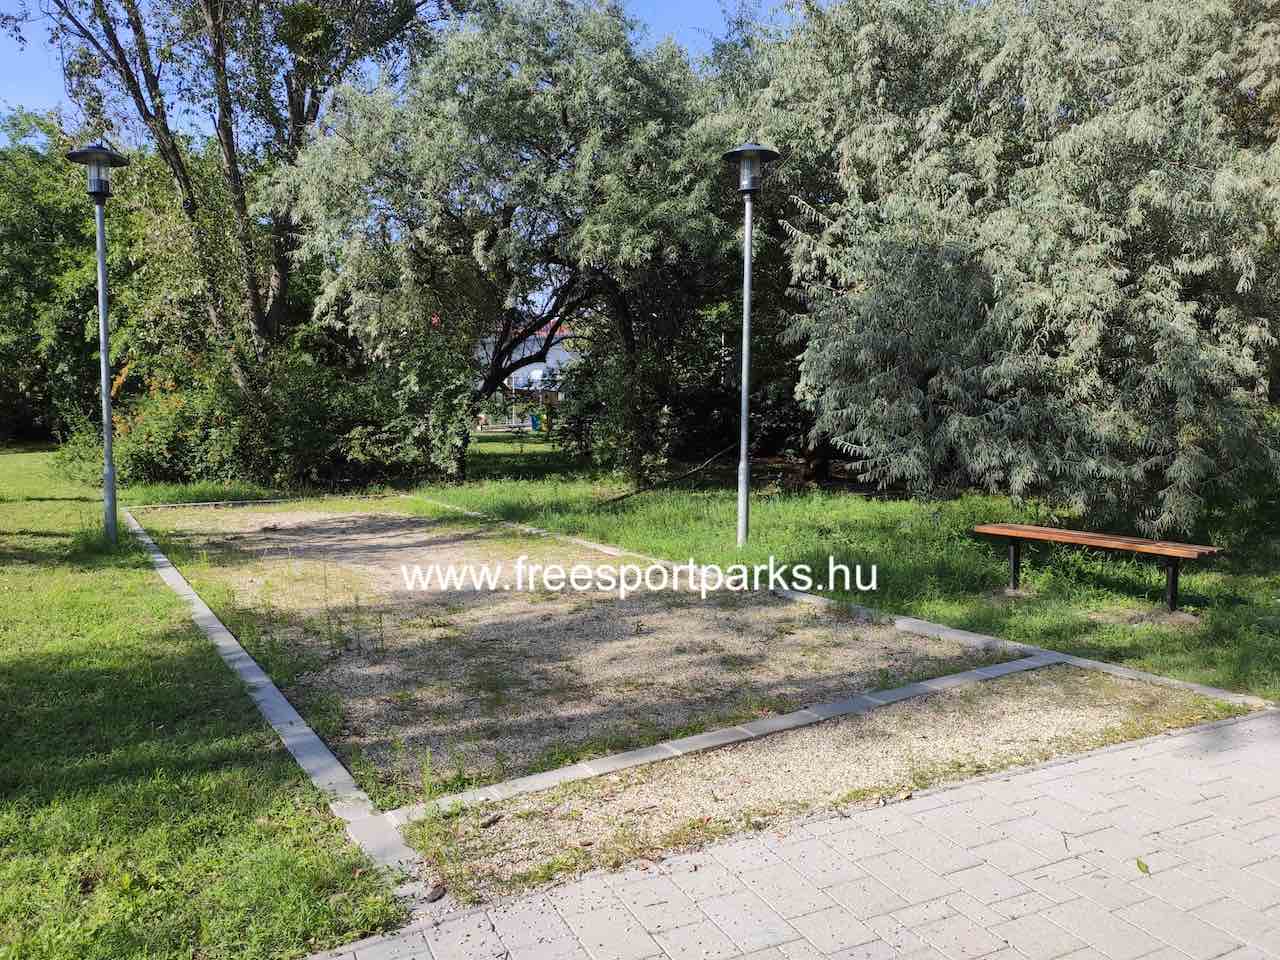 petanque pálya - Kőbánya Sportliget - Free Sport Parks térkép